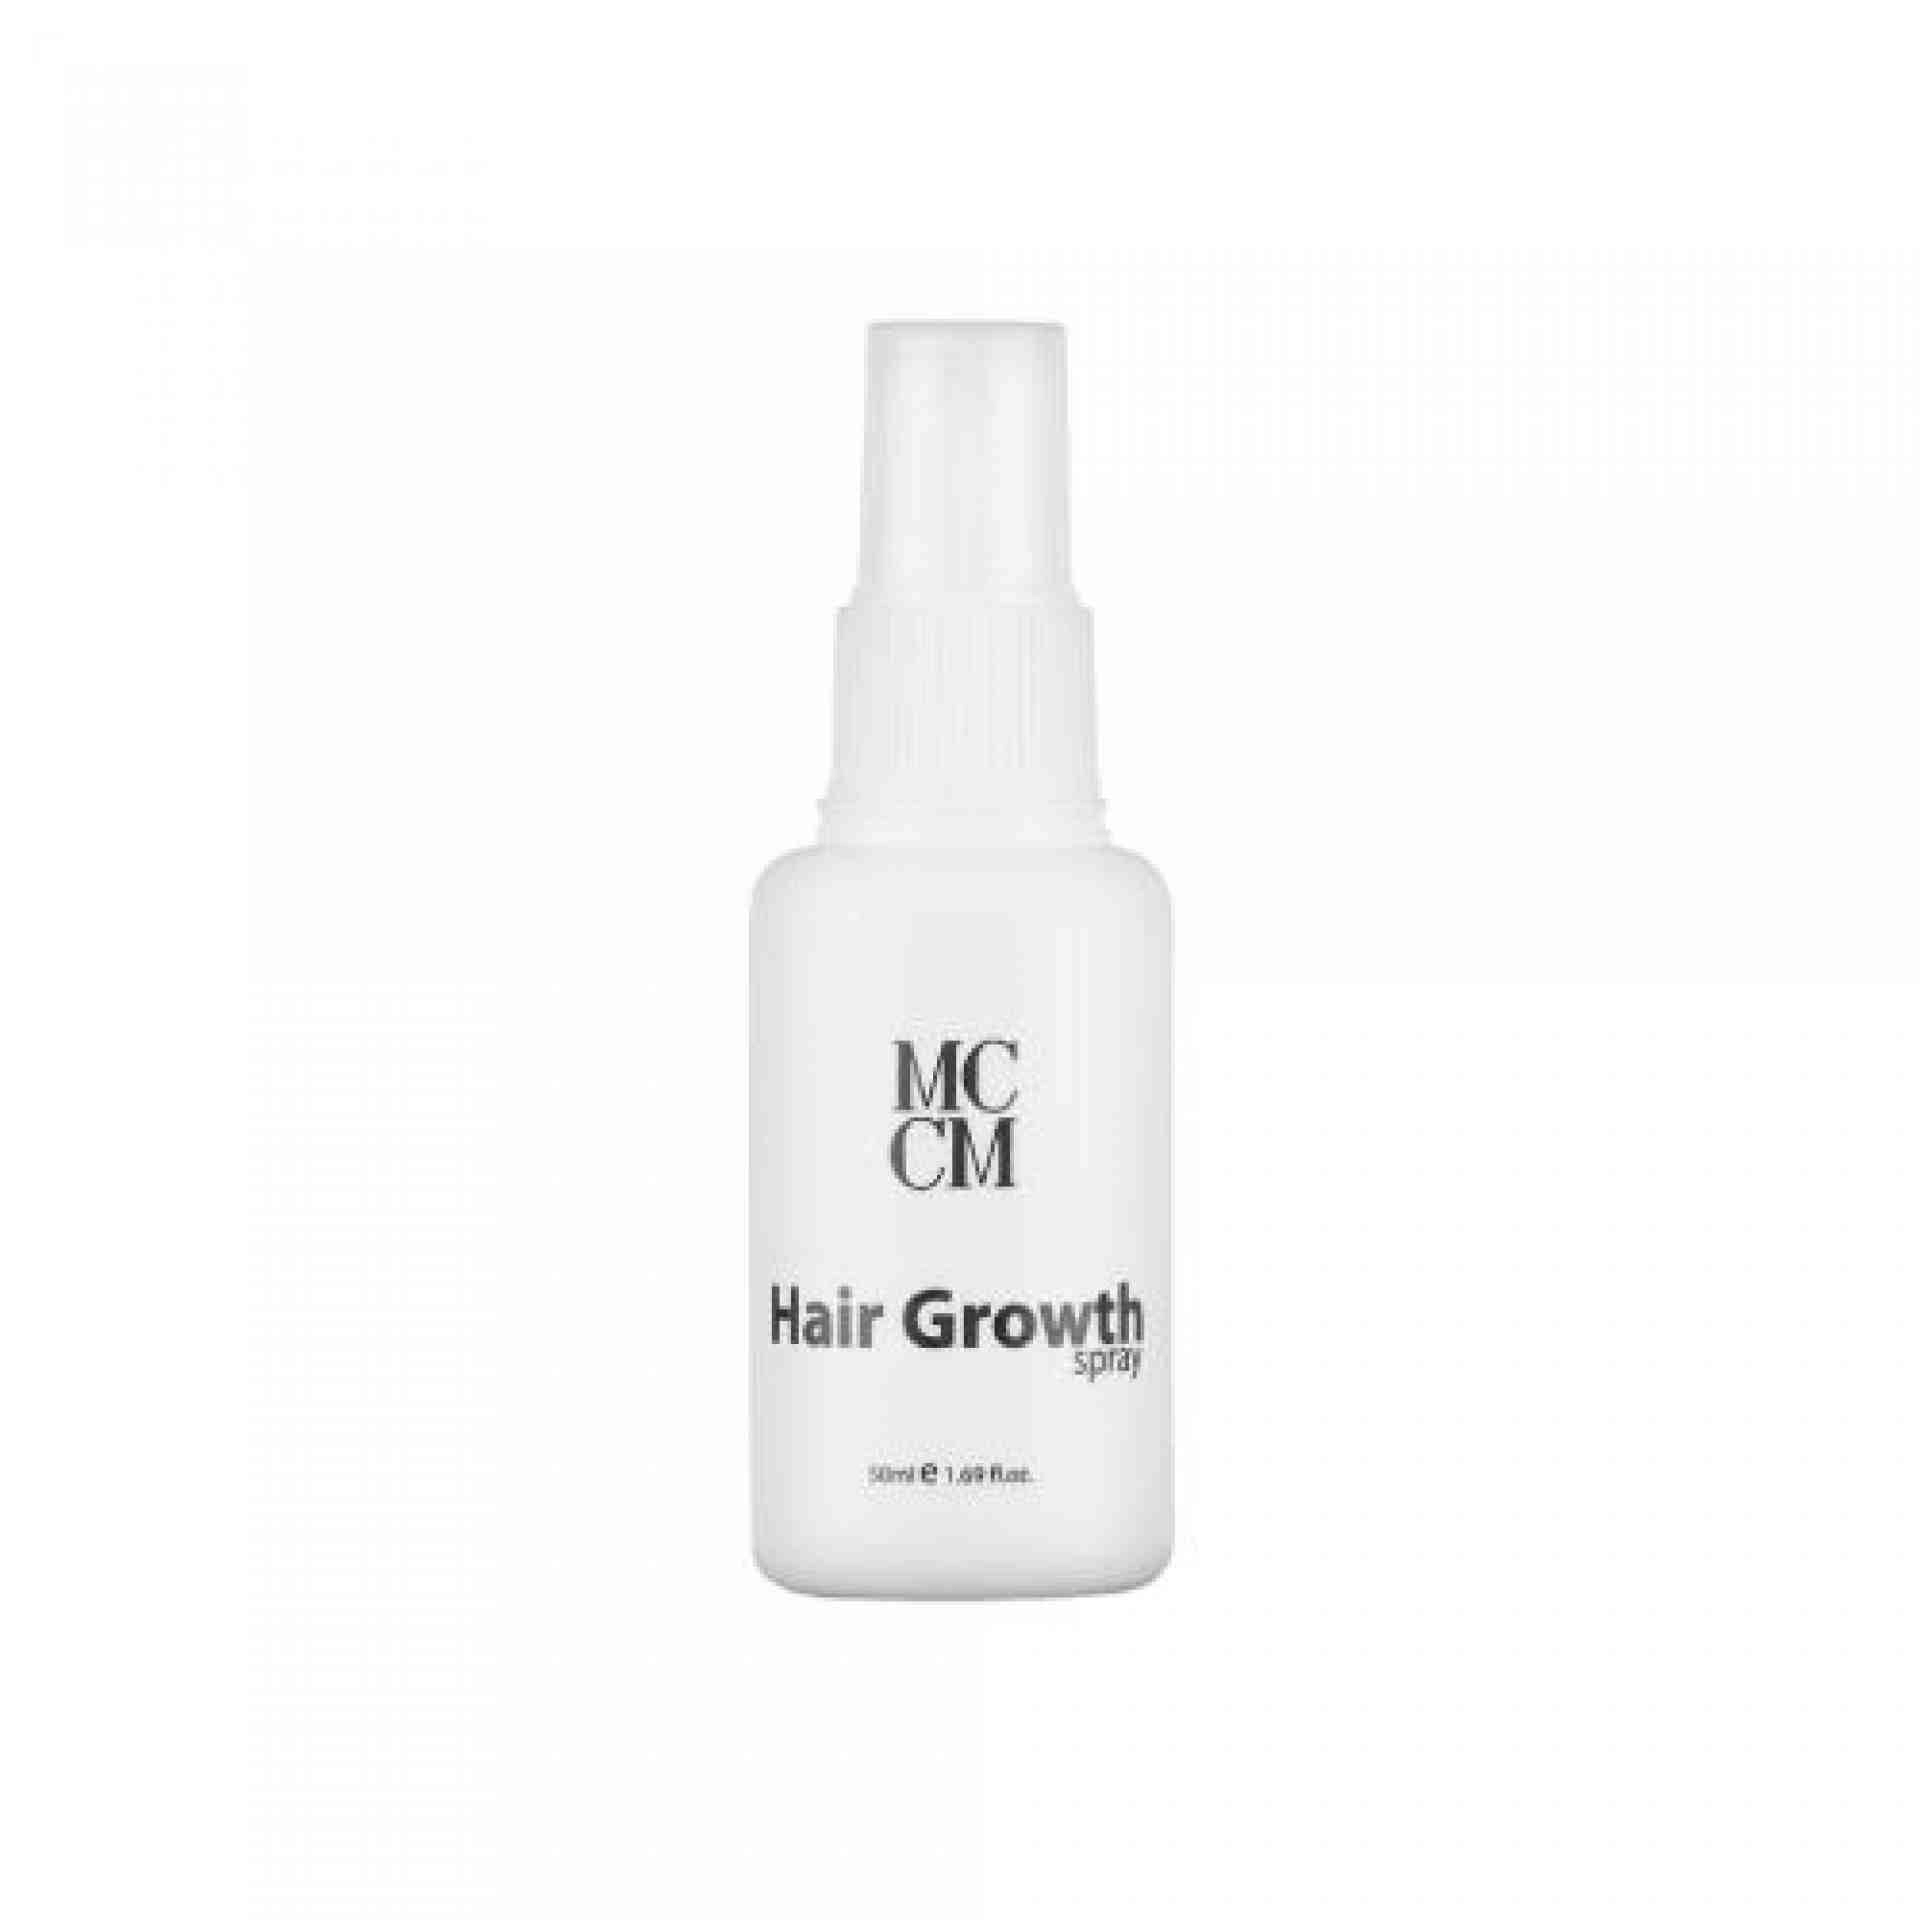 Hair Growth Spray | Tratamiento para el crecimiento del cabello 50ml - Topic Line - MCCM ®